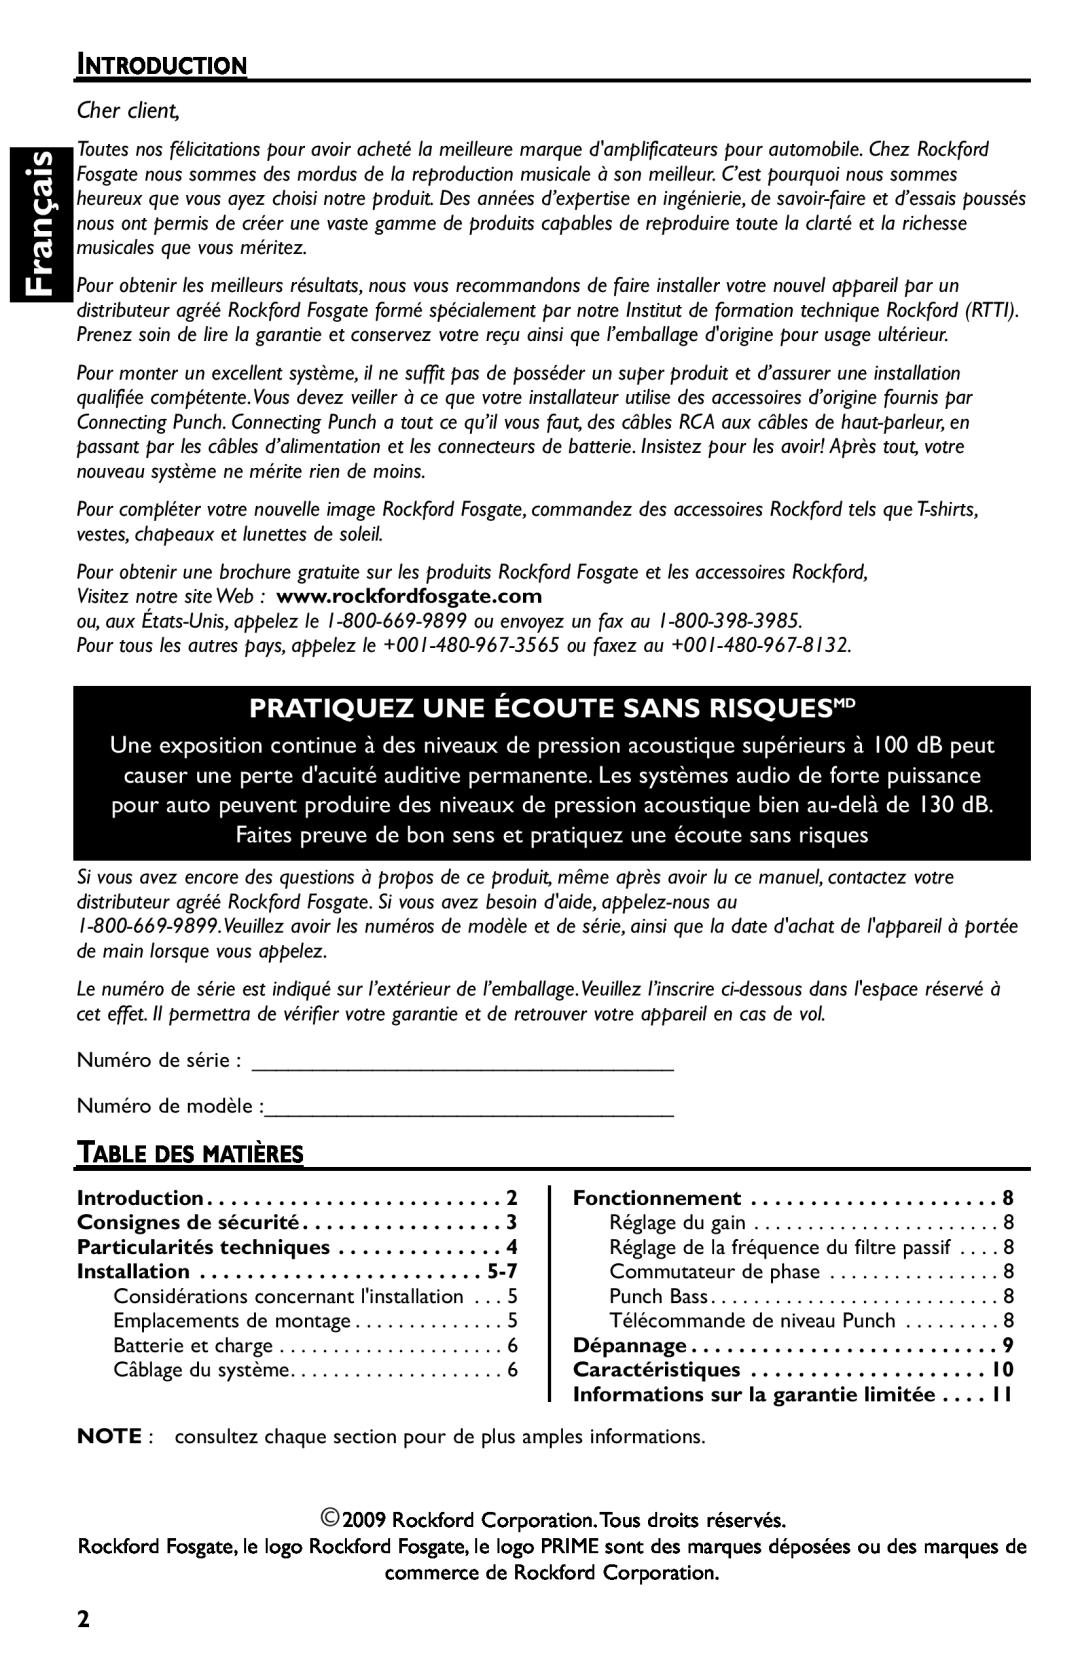 Rockford Fosgate R500-1 manual Français, Pratiquez Une Écoute Sans Risquesmd, Introduction, Cher client, Table Des Matières 